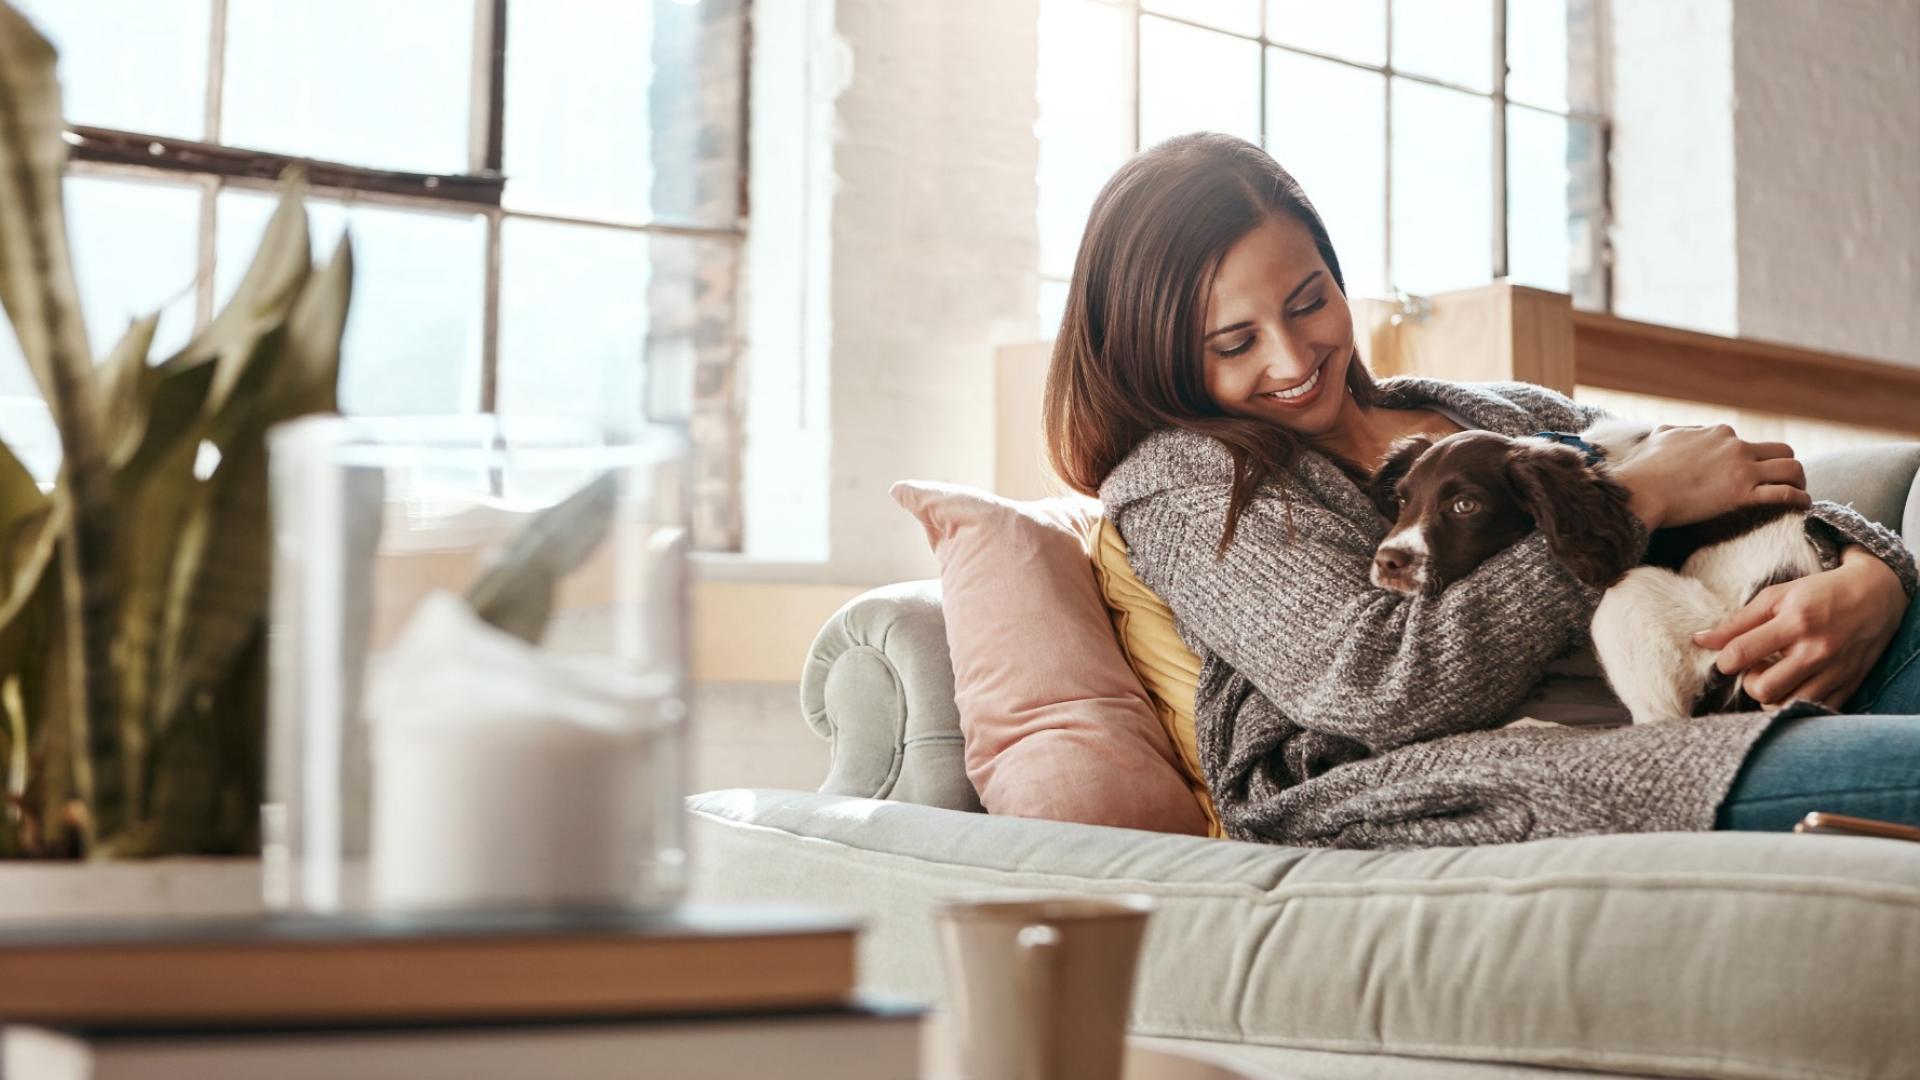 Auf dem Bild ist eine junge Frau zu sehen, die auf ihrer Couch mit ihrem Hund kuschelt.